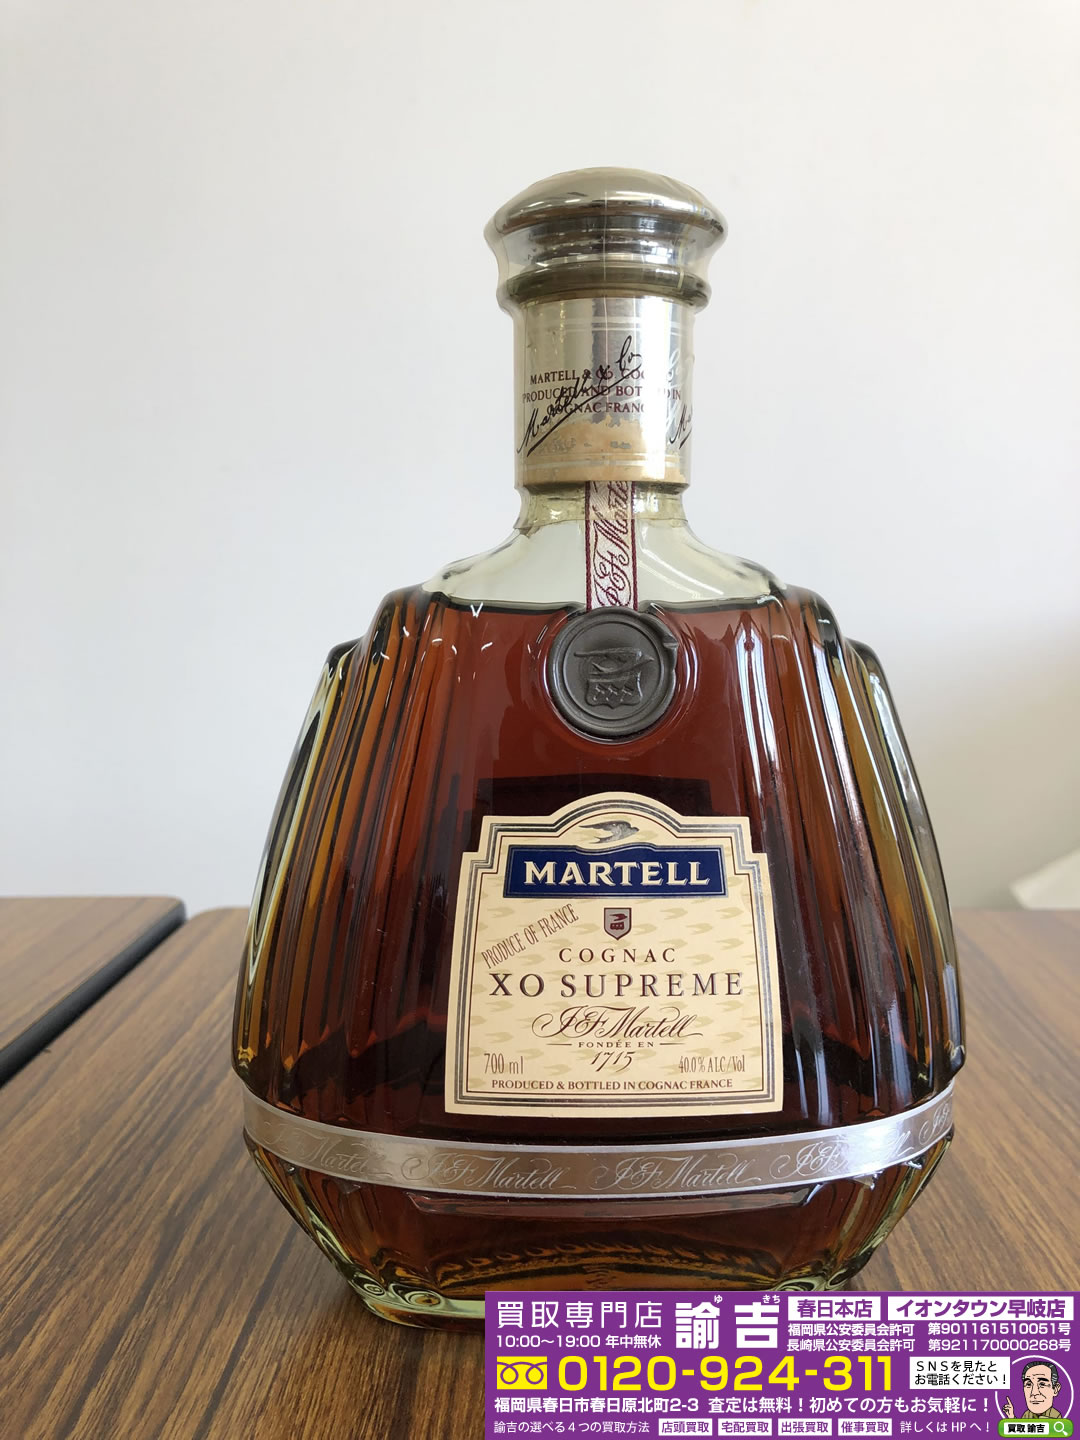 洋酒、ウイスキー・ブランデーのお買取なら買取専門店諭吉へ！「MARTELL XO SUPREME」お買取りしました！